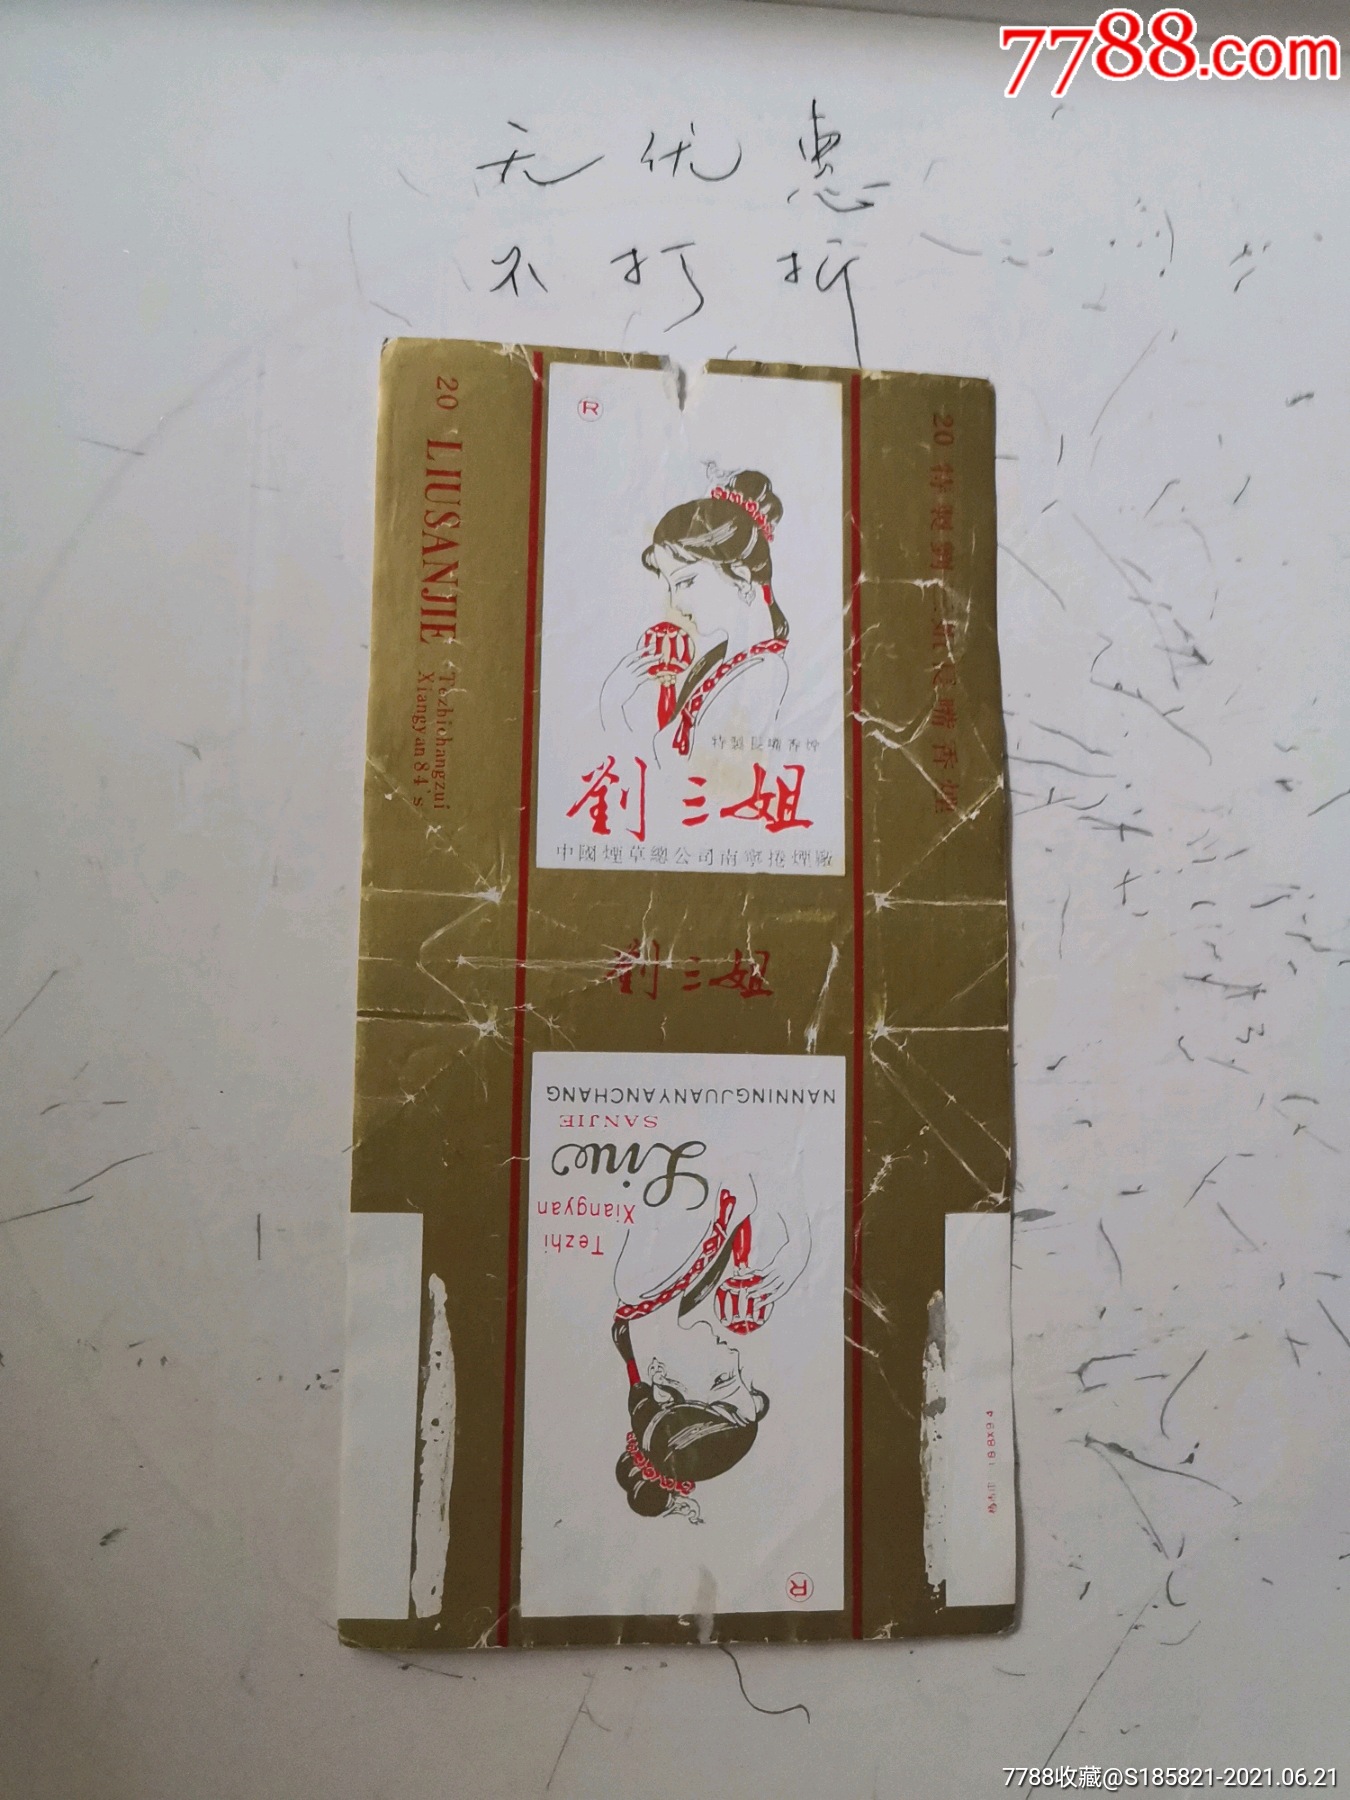 刘三姐_烟标/烟盒_图片价格_收藏鉴定_7788钱币网